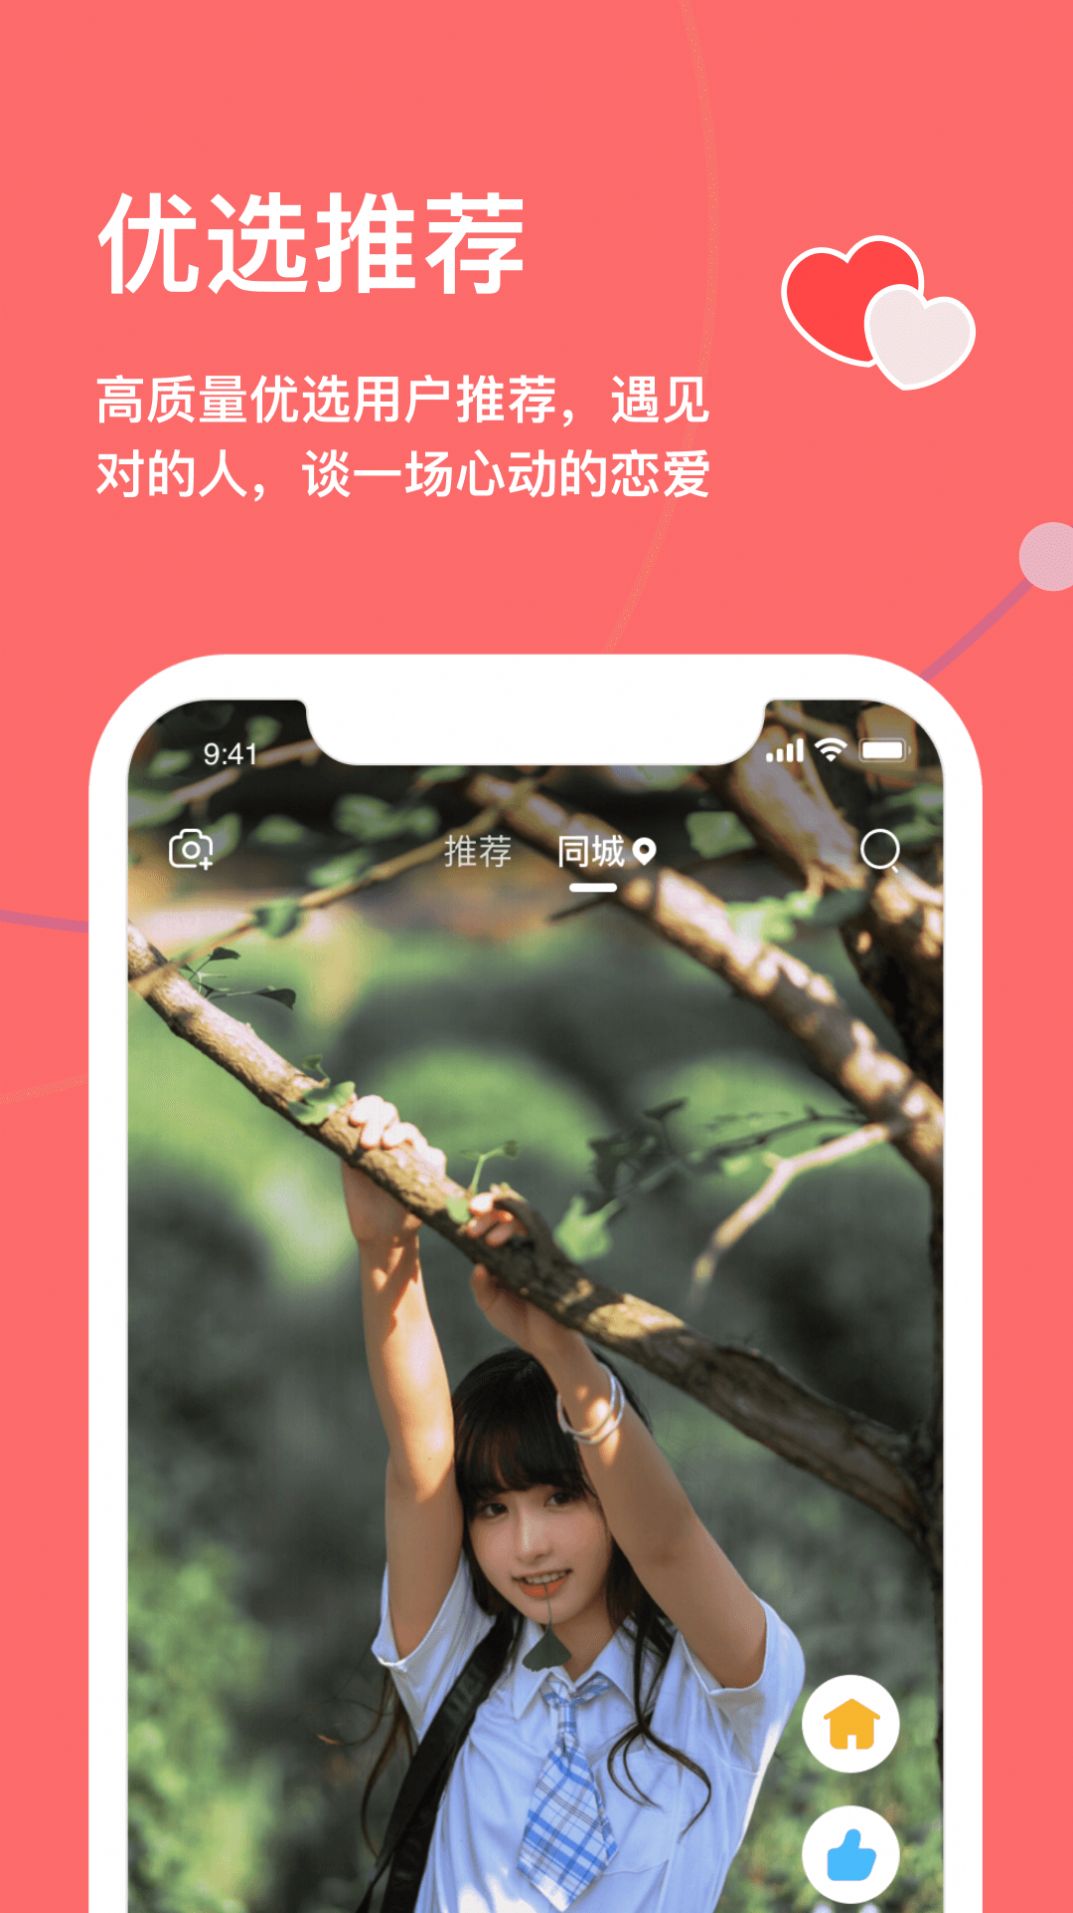 天下有约社交平台官方app图片2